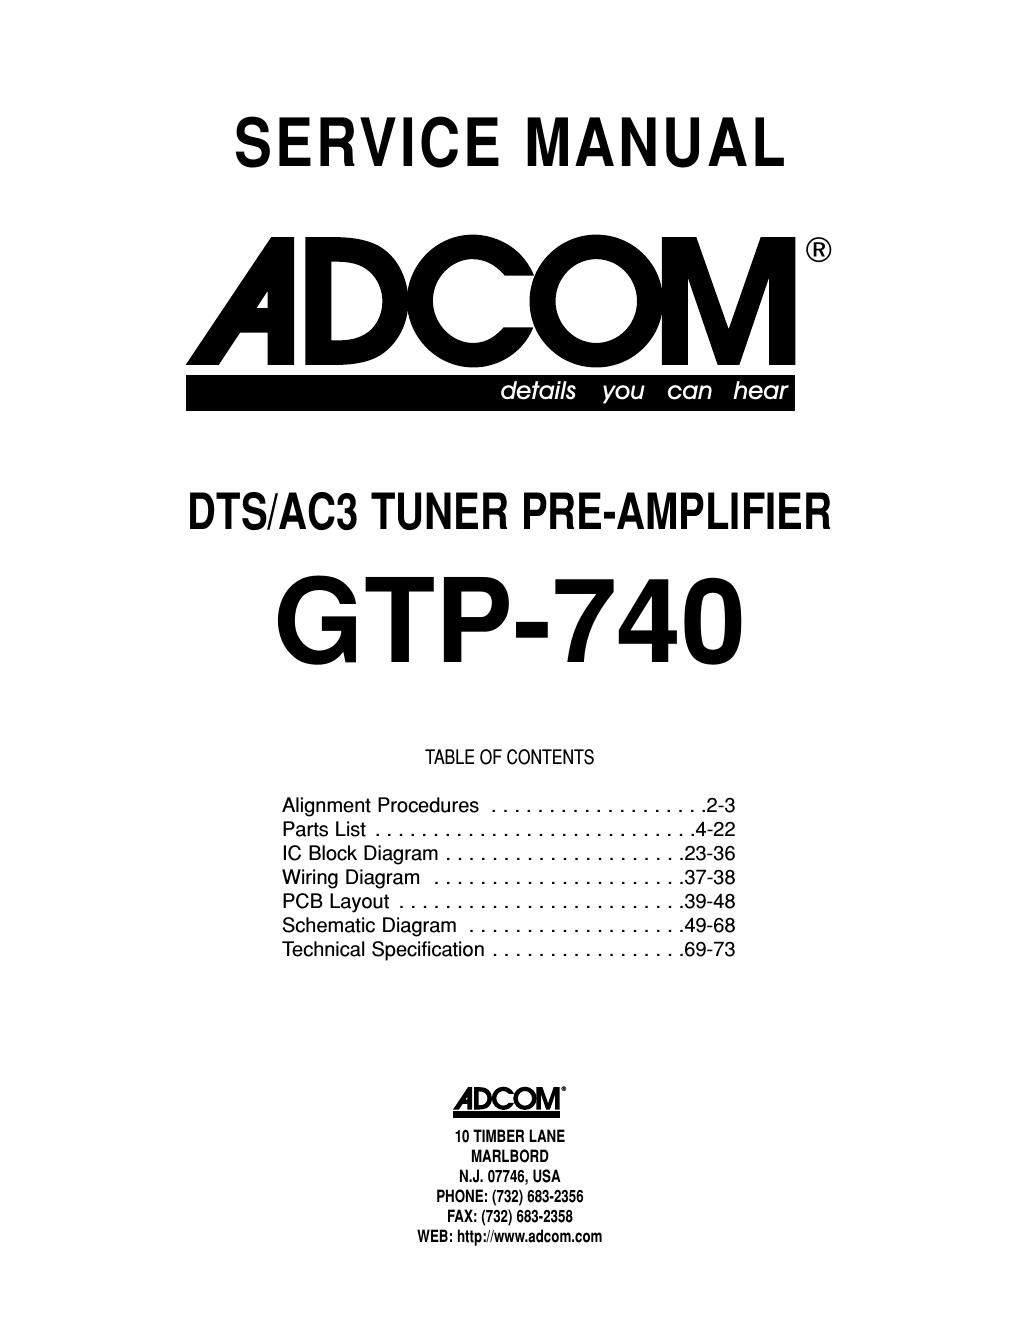 adcom gtp 740 service manual